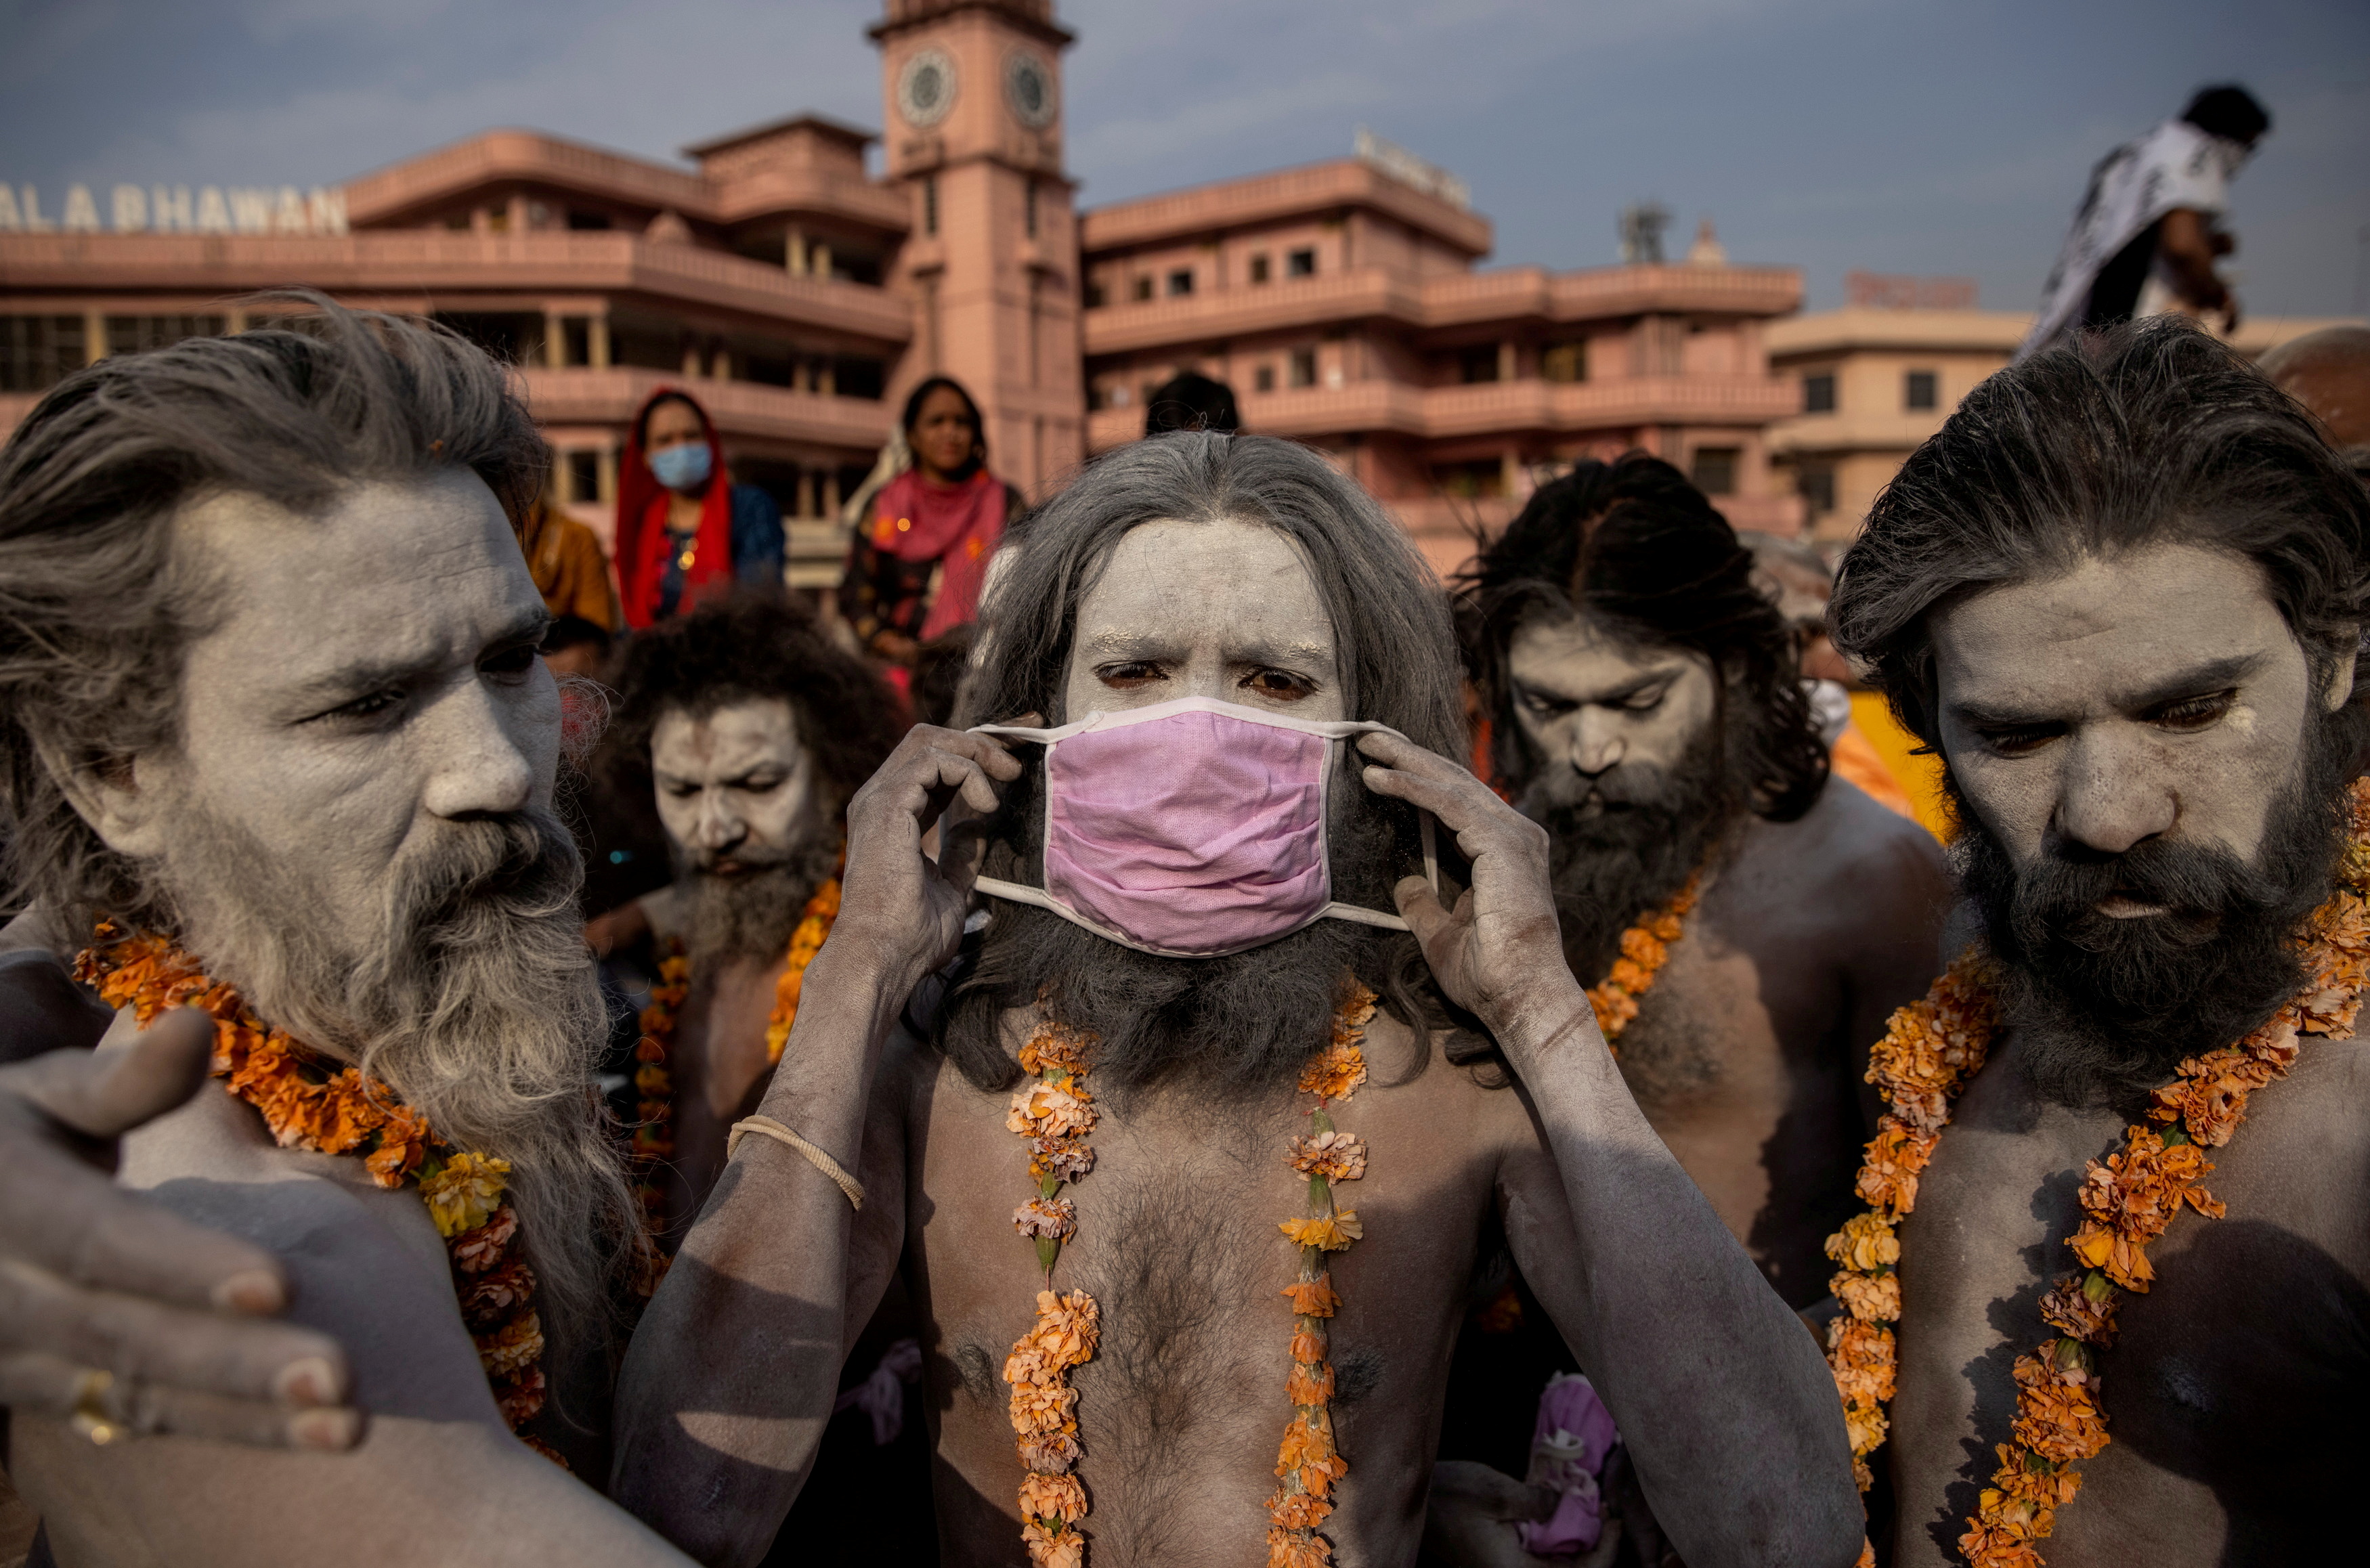 Un Naga Sadhu, u hombre santo hindú lleva una máscara antes de la procesión para darse un baño en el río Ganges durante el Shahi Snan en el "Kumbh Mela", o Festival de la Jarra, en medio de la propagación de la enfermedad del coronavirus (COVID-19), en Haridwar, India, el 12 de abril de 2021.